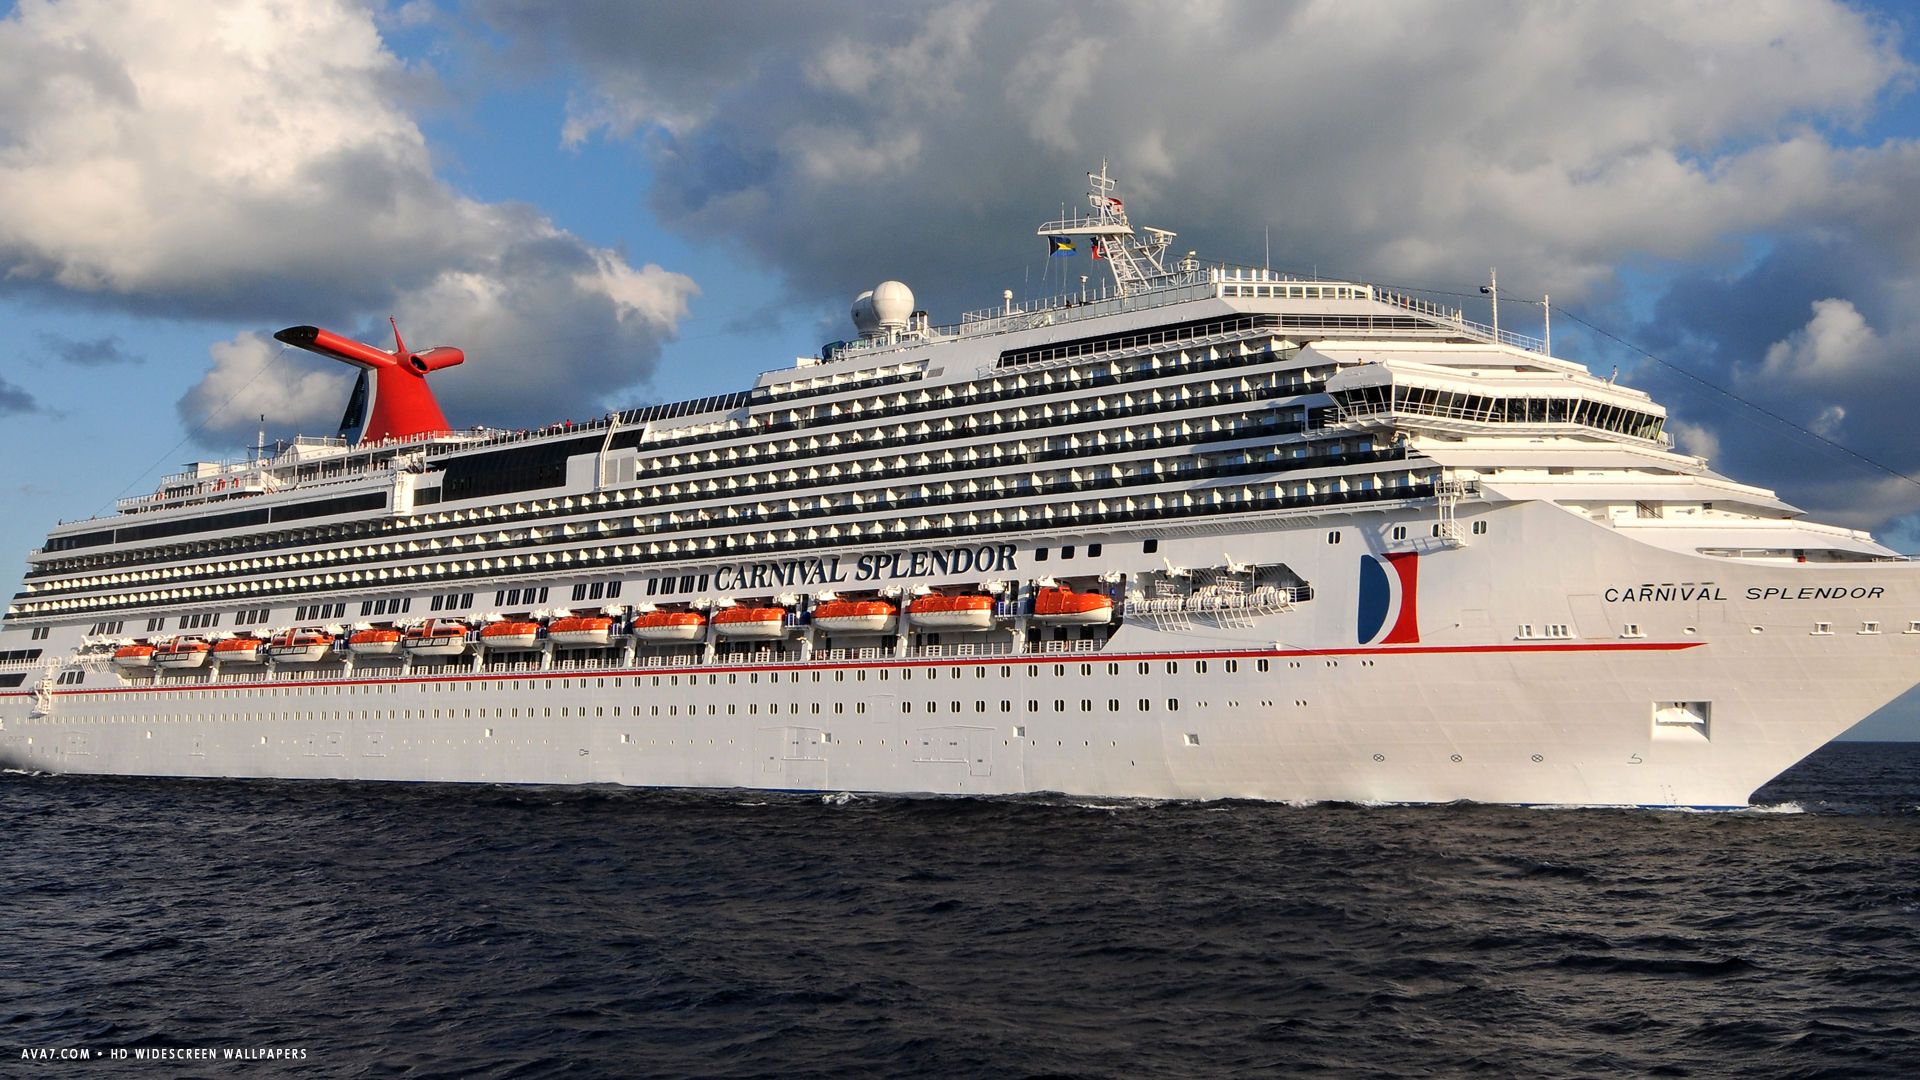 carnival splendor cruise ship hd widescreen wallpaper cruise ships